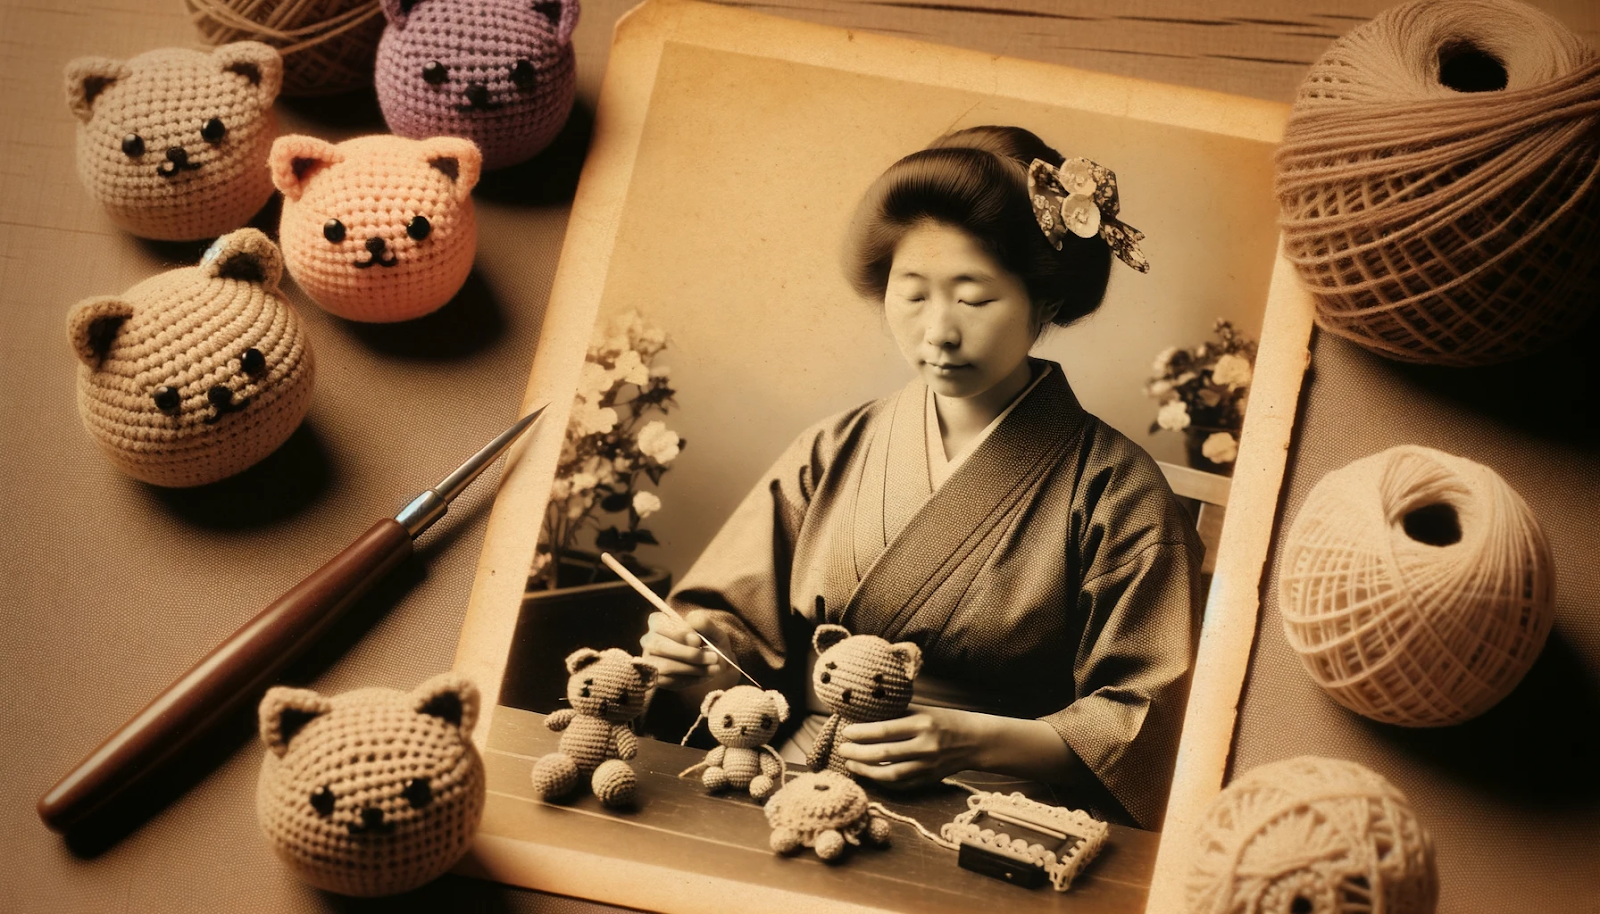 Foto de uma fotografia antiga em tom sépia mostrando uma japonesa de décadas atrás elaborando um Amigurumi. Há artesanatos antigos de Amigurumi em uma mesa de madeira ao lado dela.